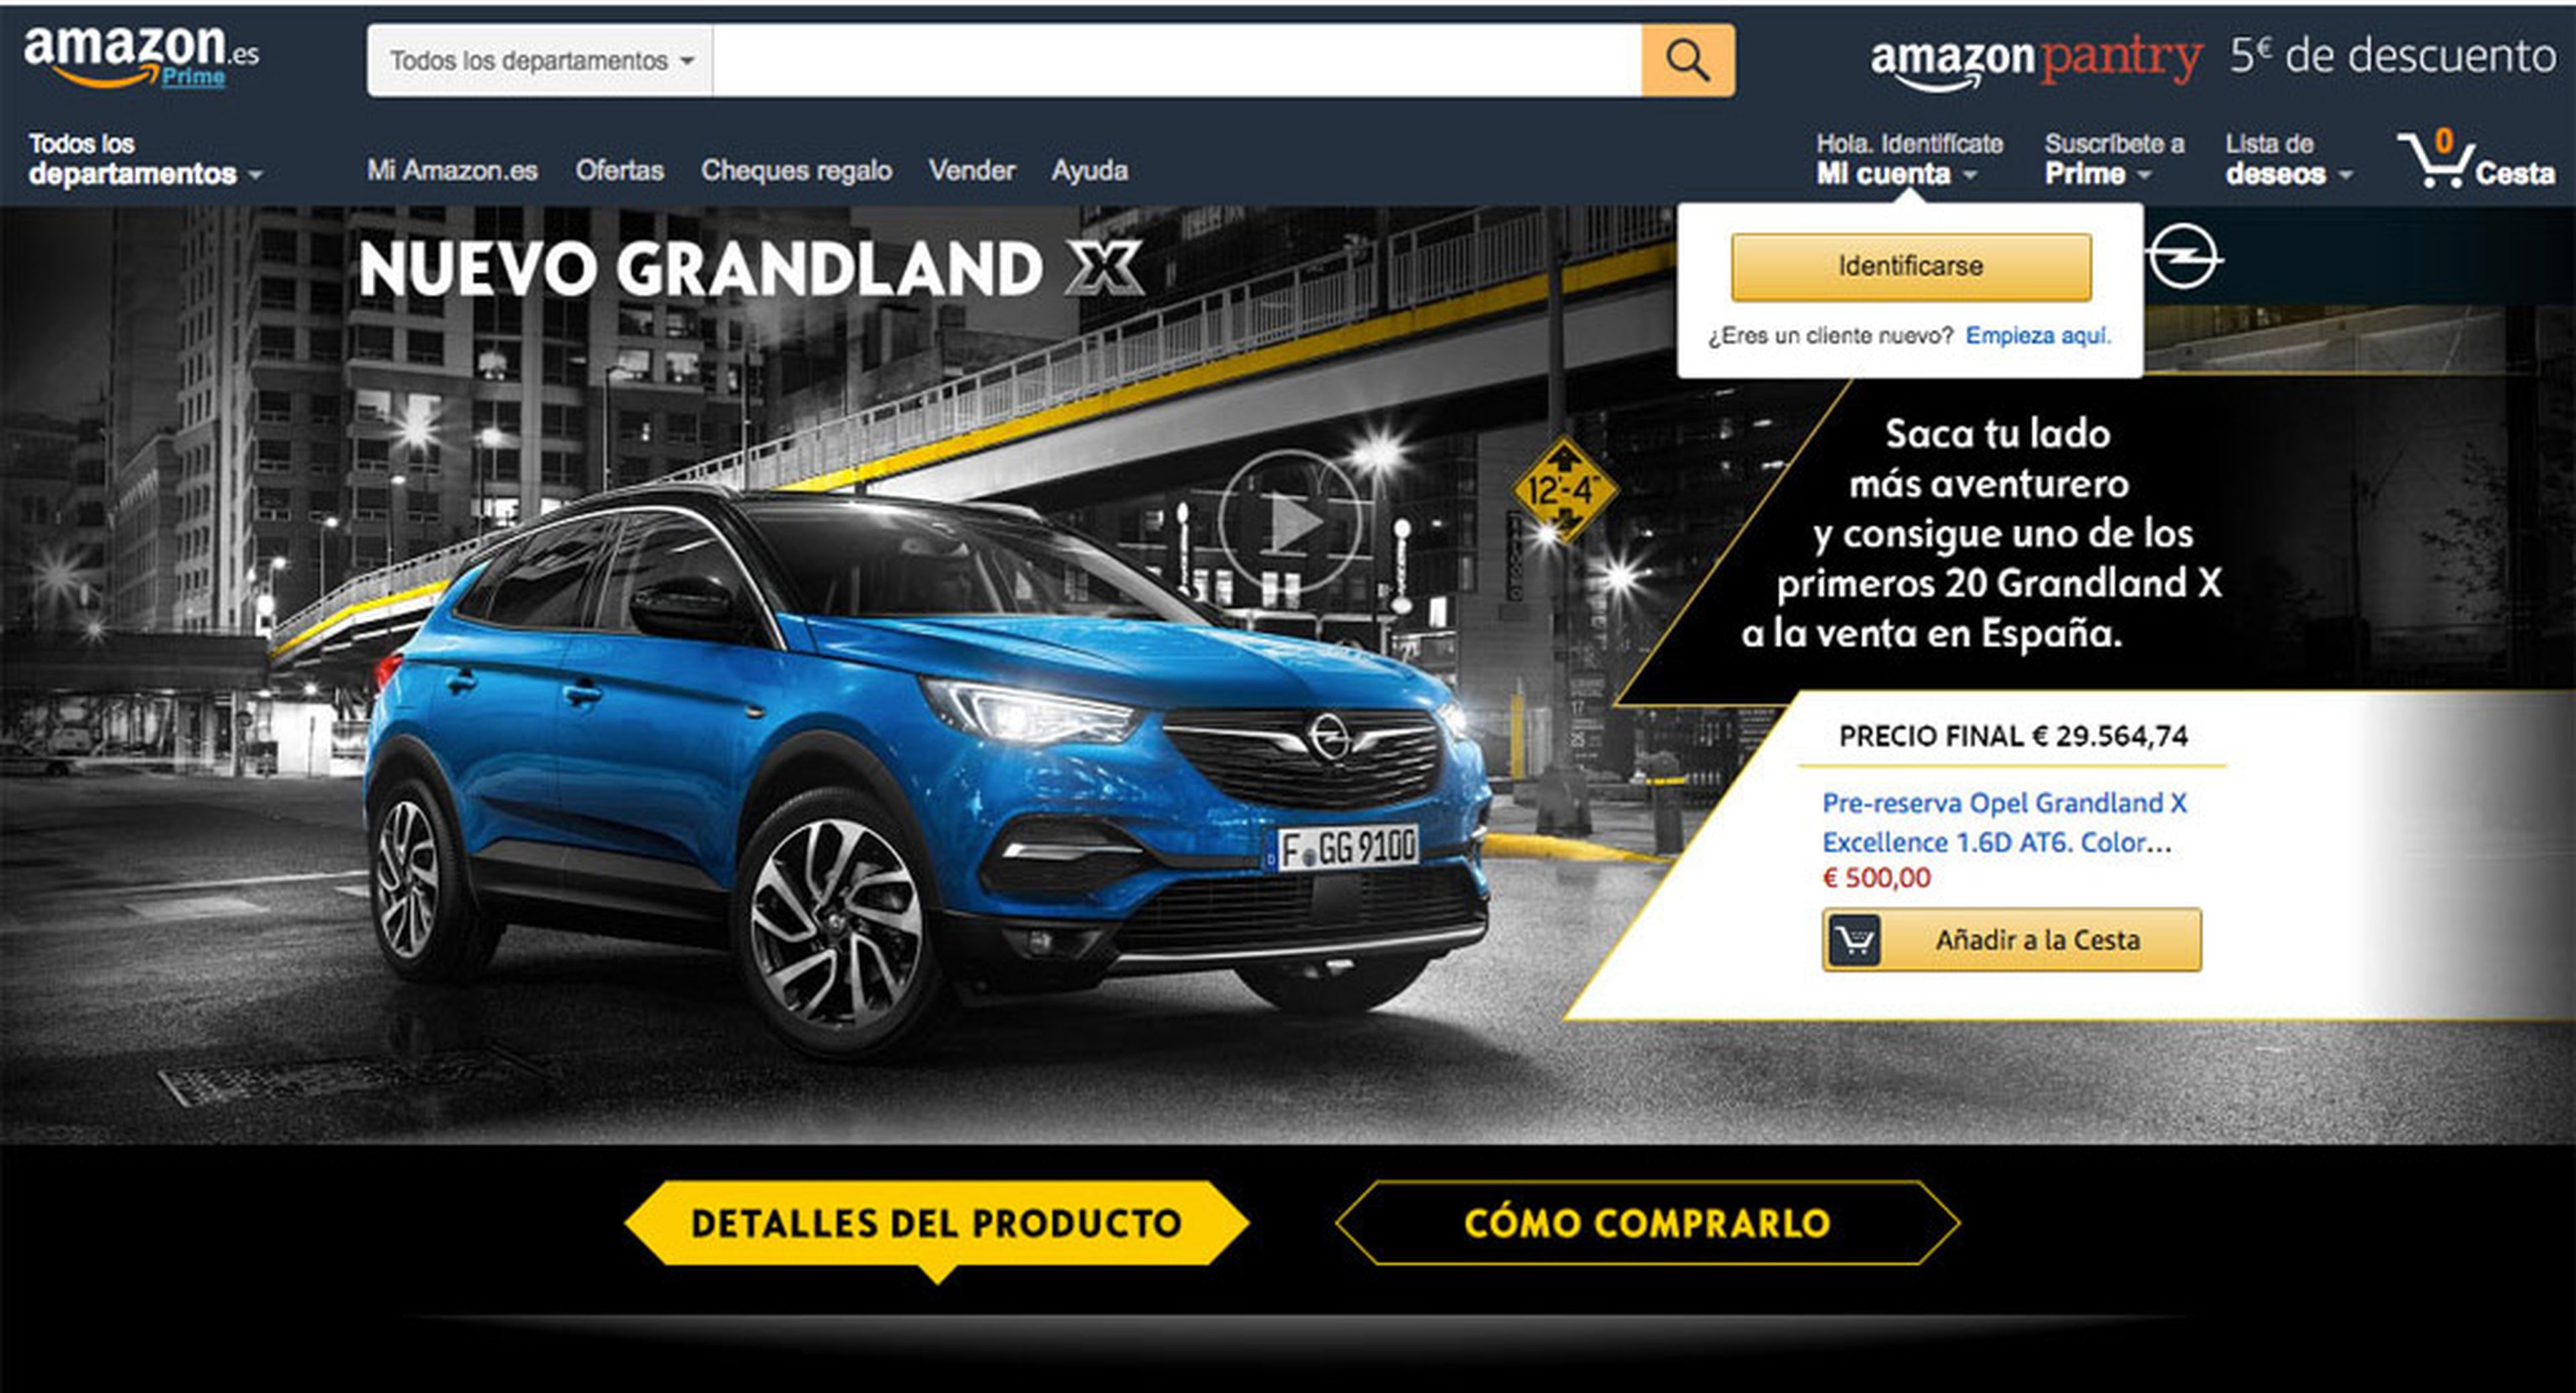 Opel y Amazon se aliaron para una campaña de marketing, pero la venta de coches está vetada en Amazon España.